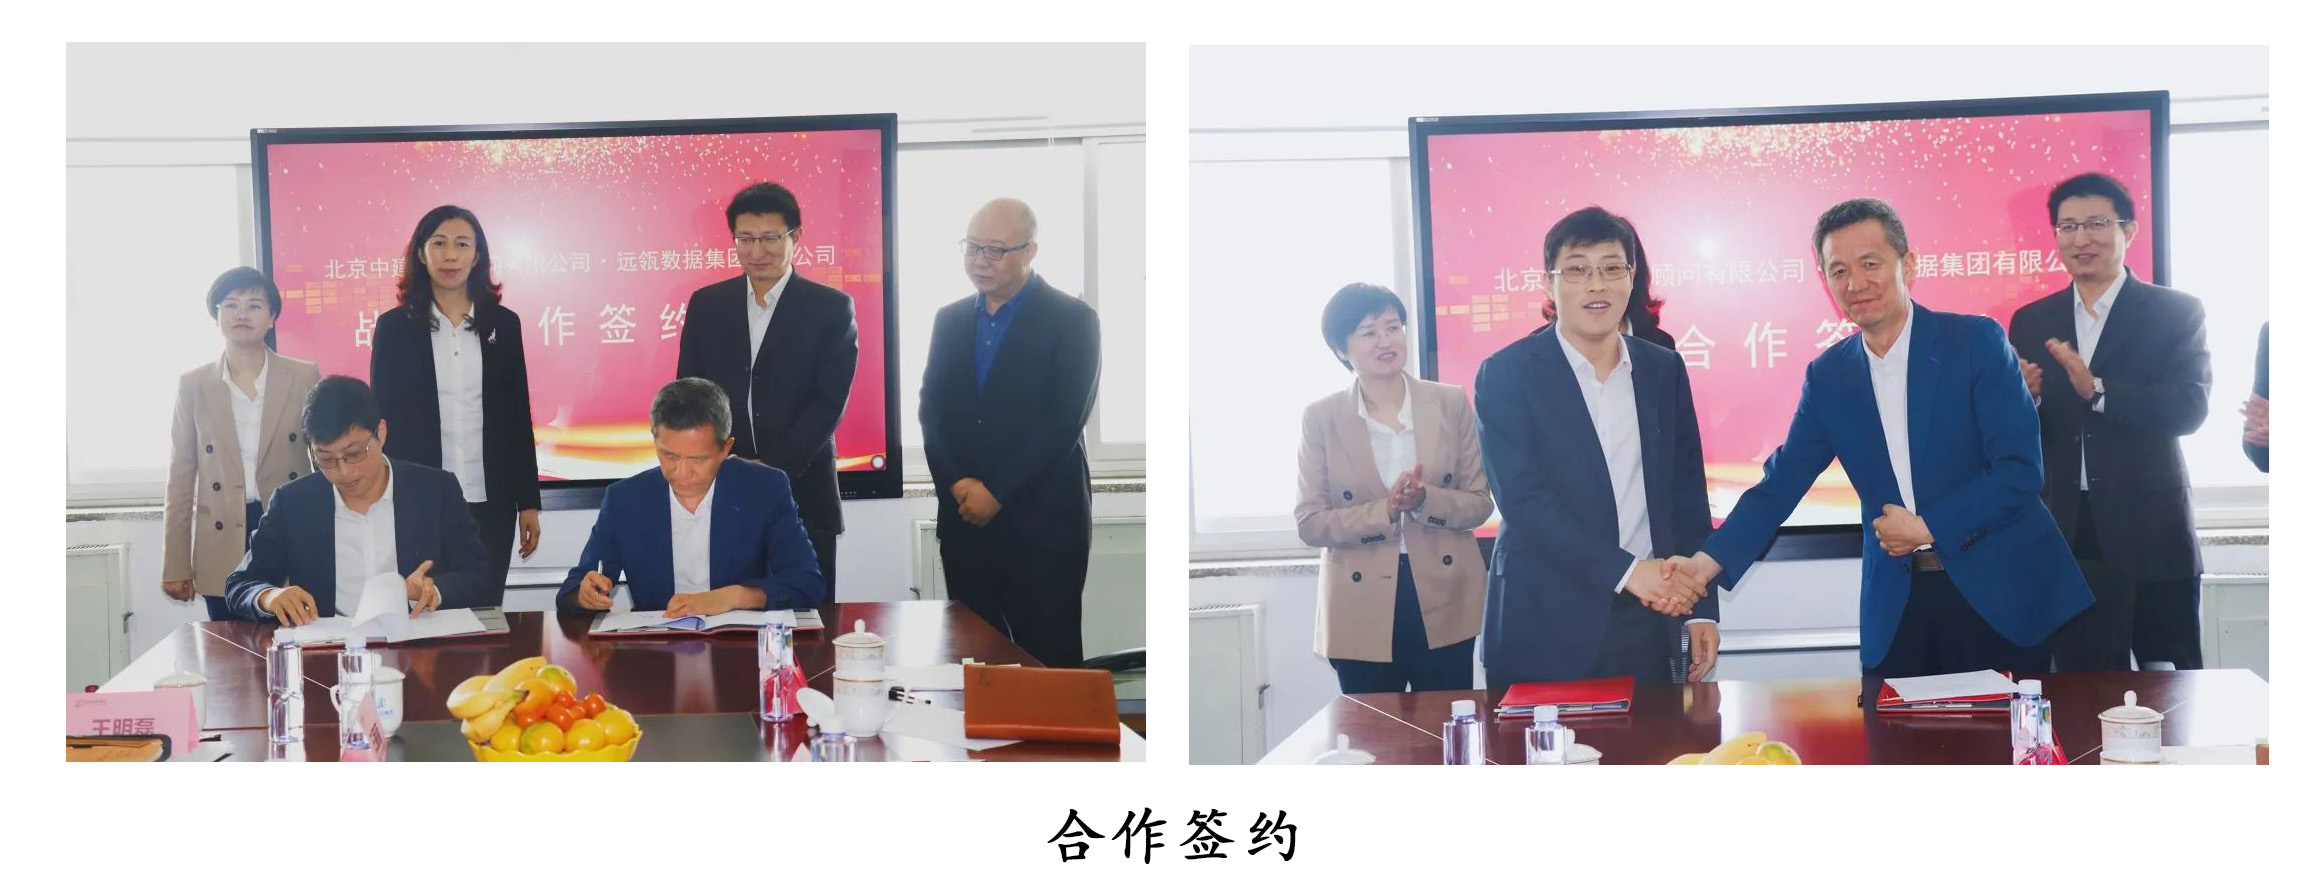 庆祝远瓴数据集团和北京中建工程有限公司达成合作